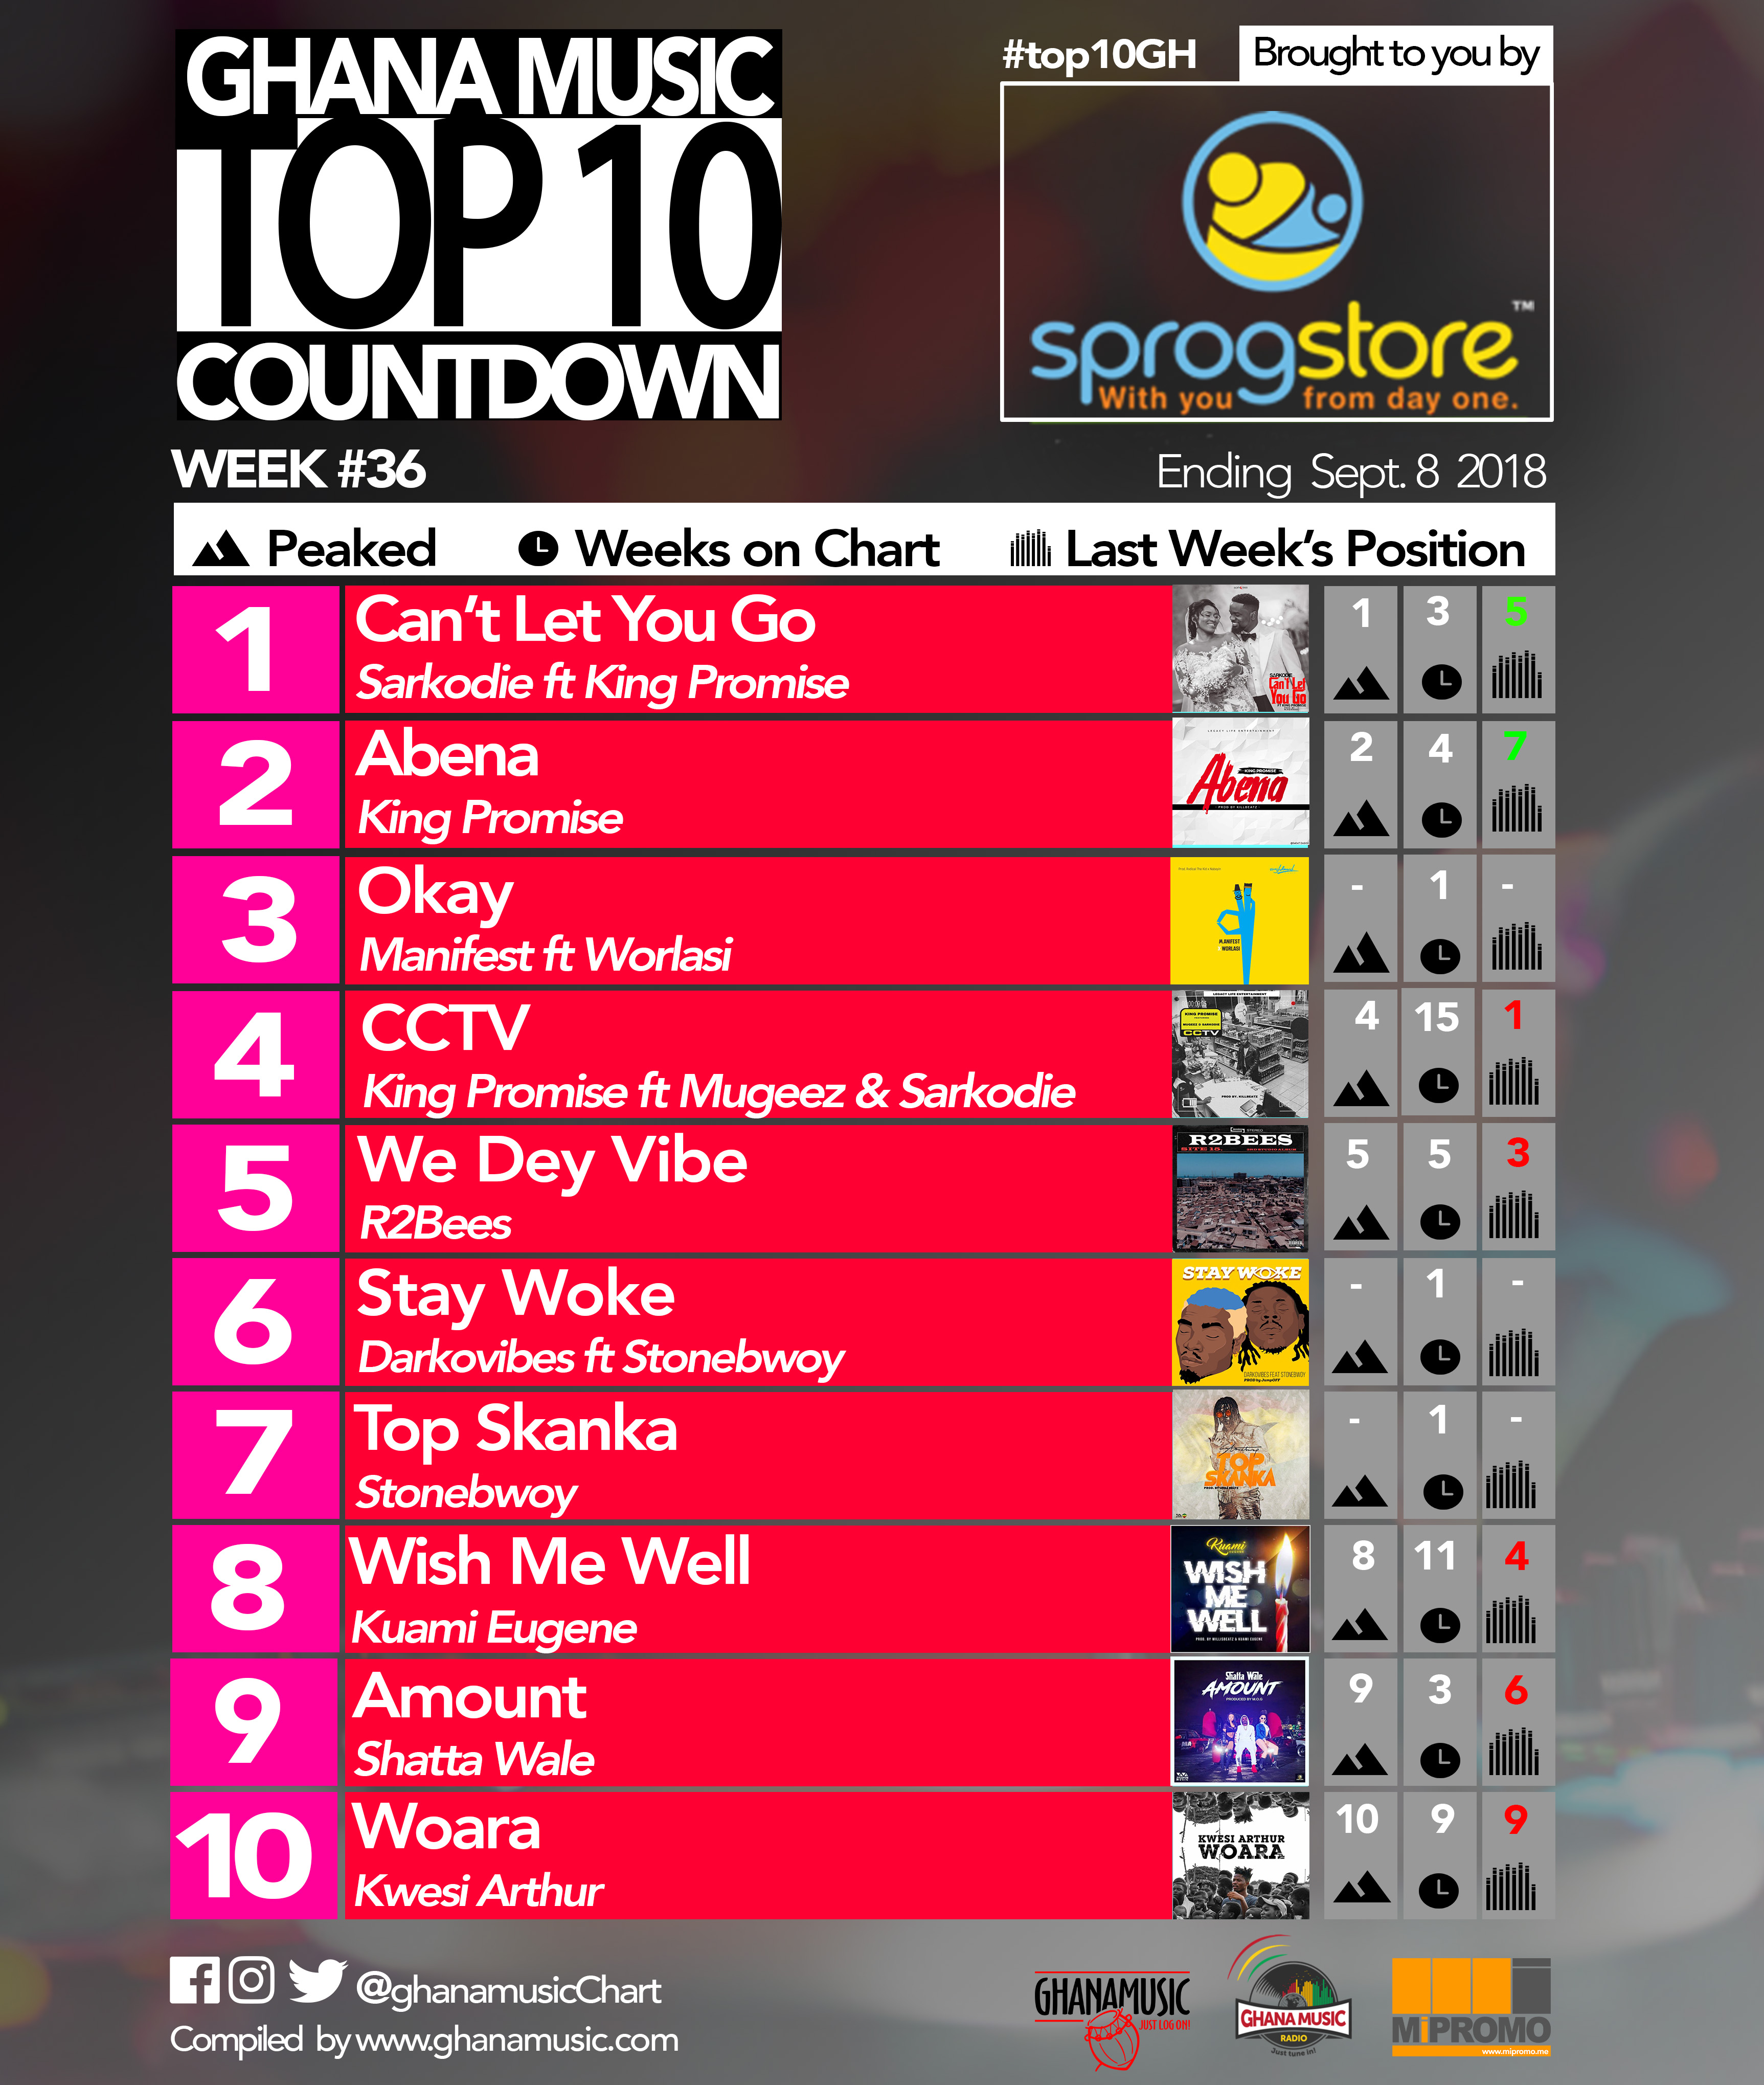 Week #35: Ghana Music Top 10 Countdown